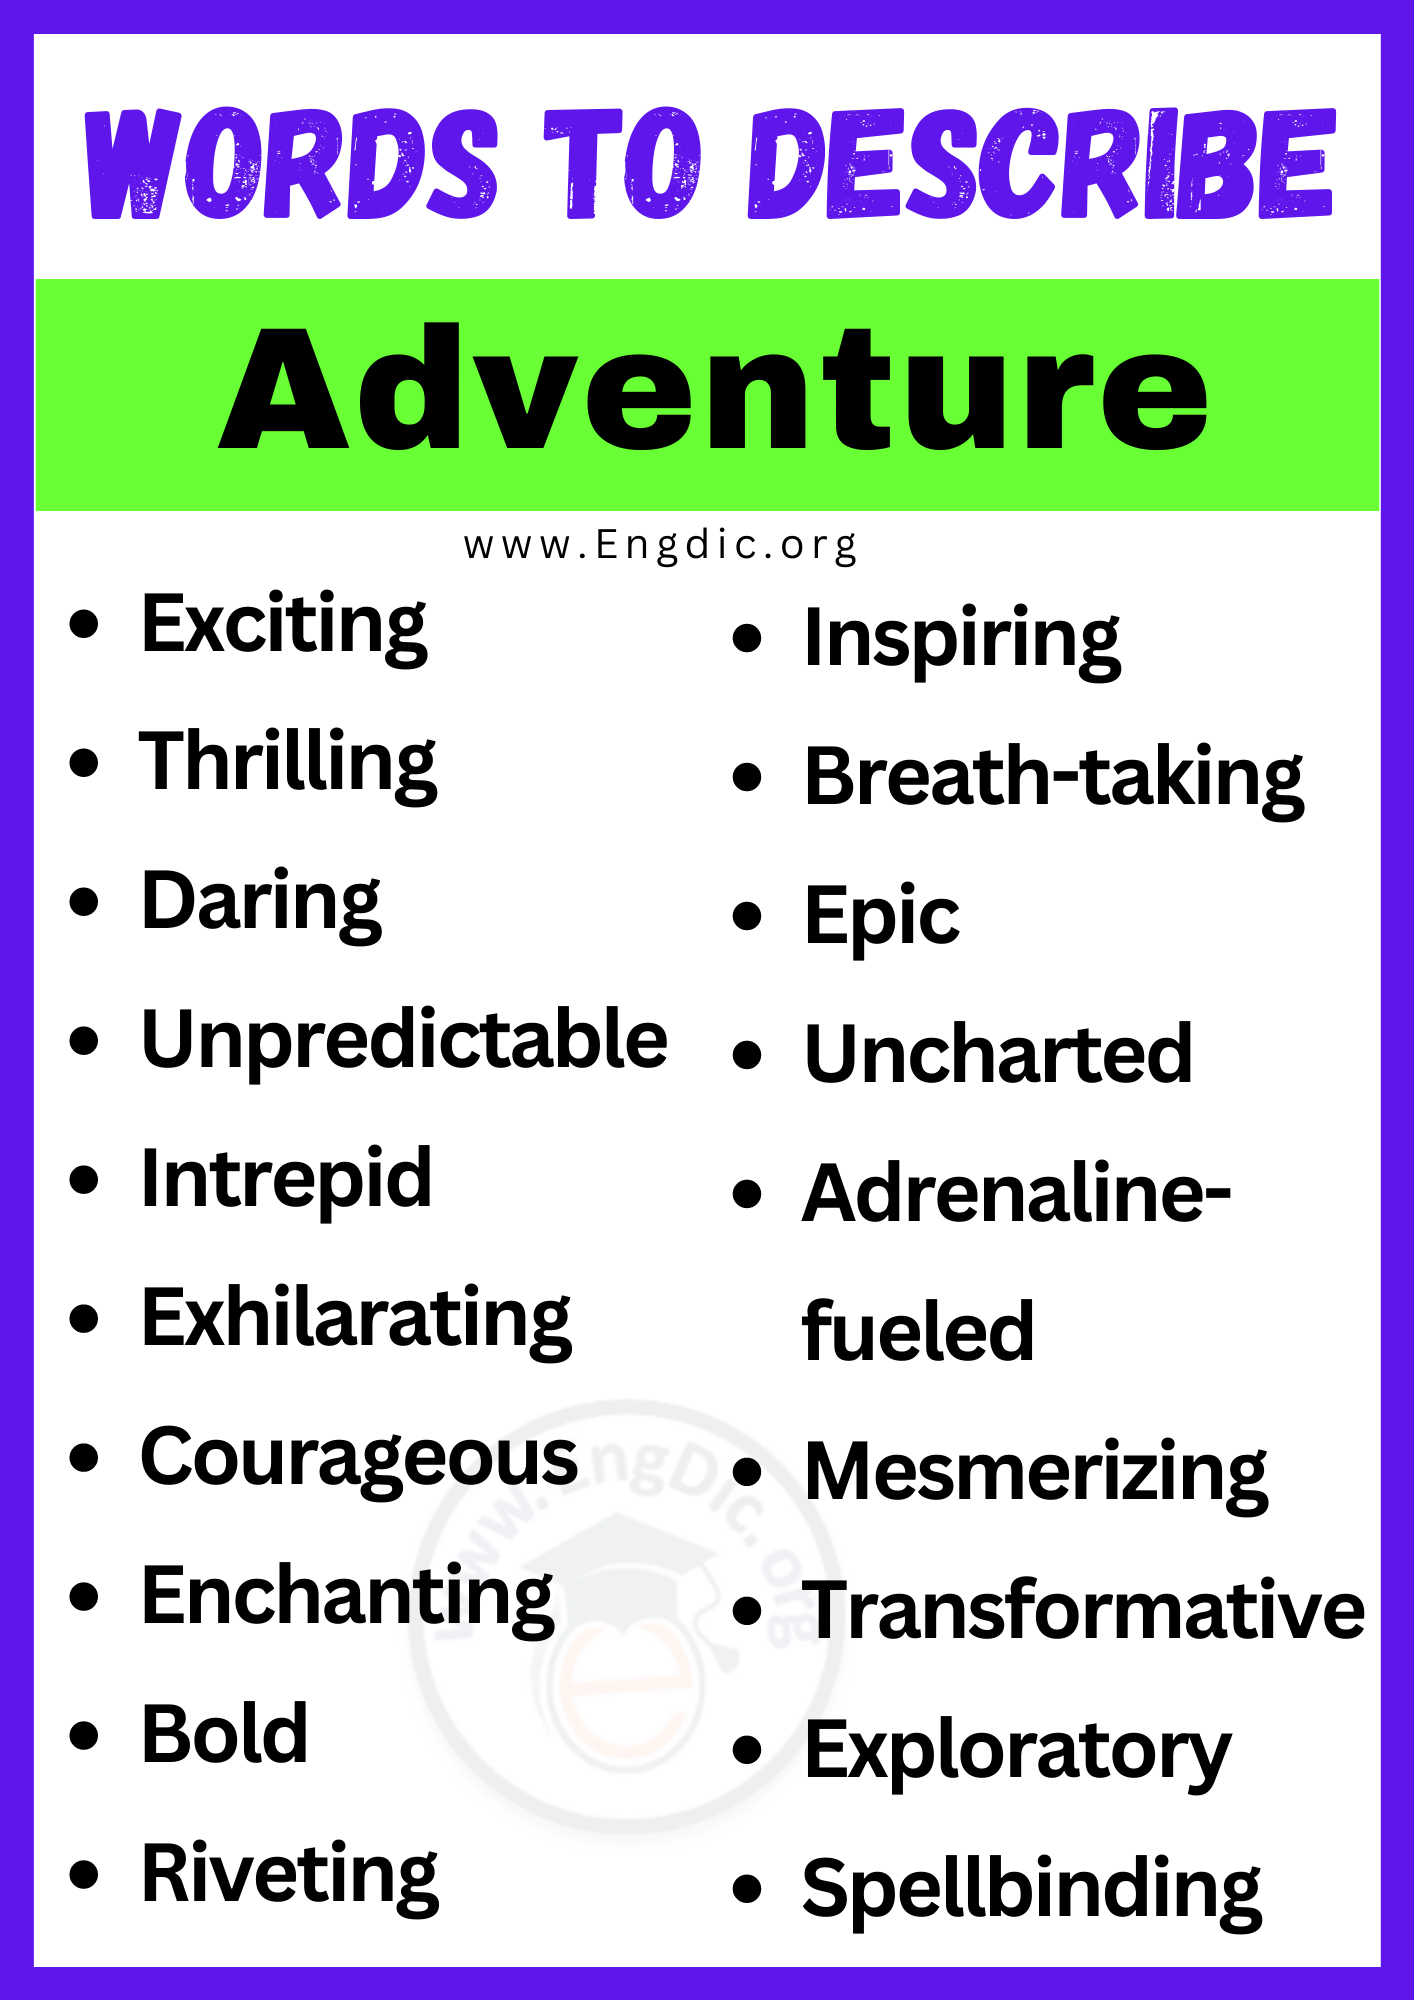 Words to Describe Adventure